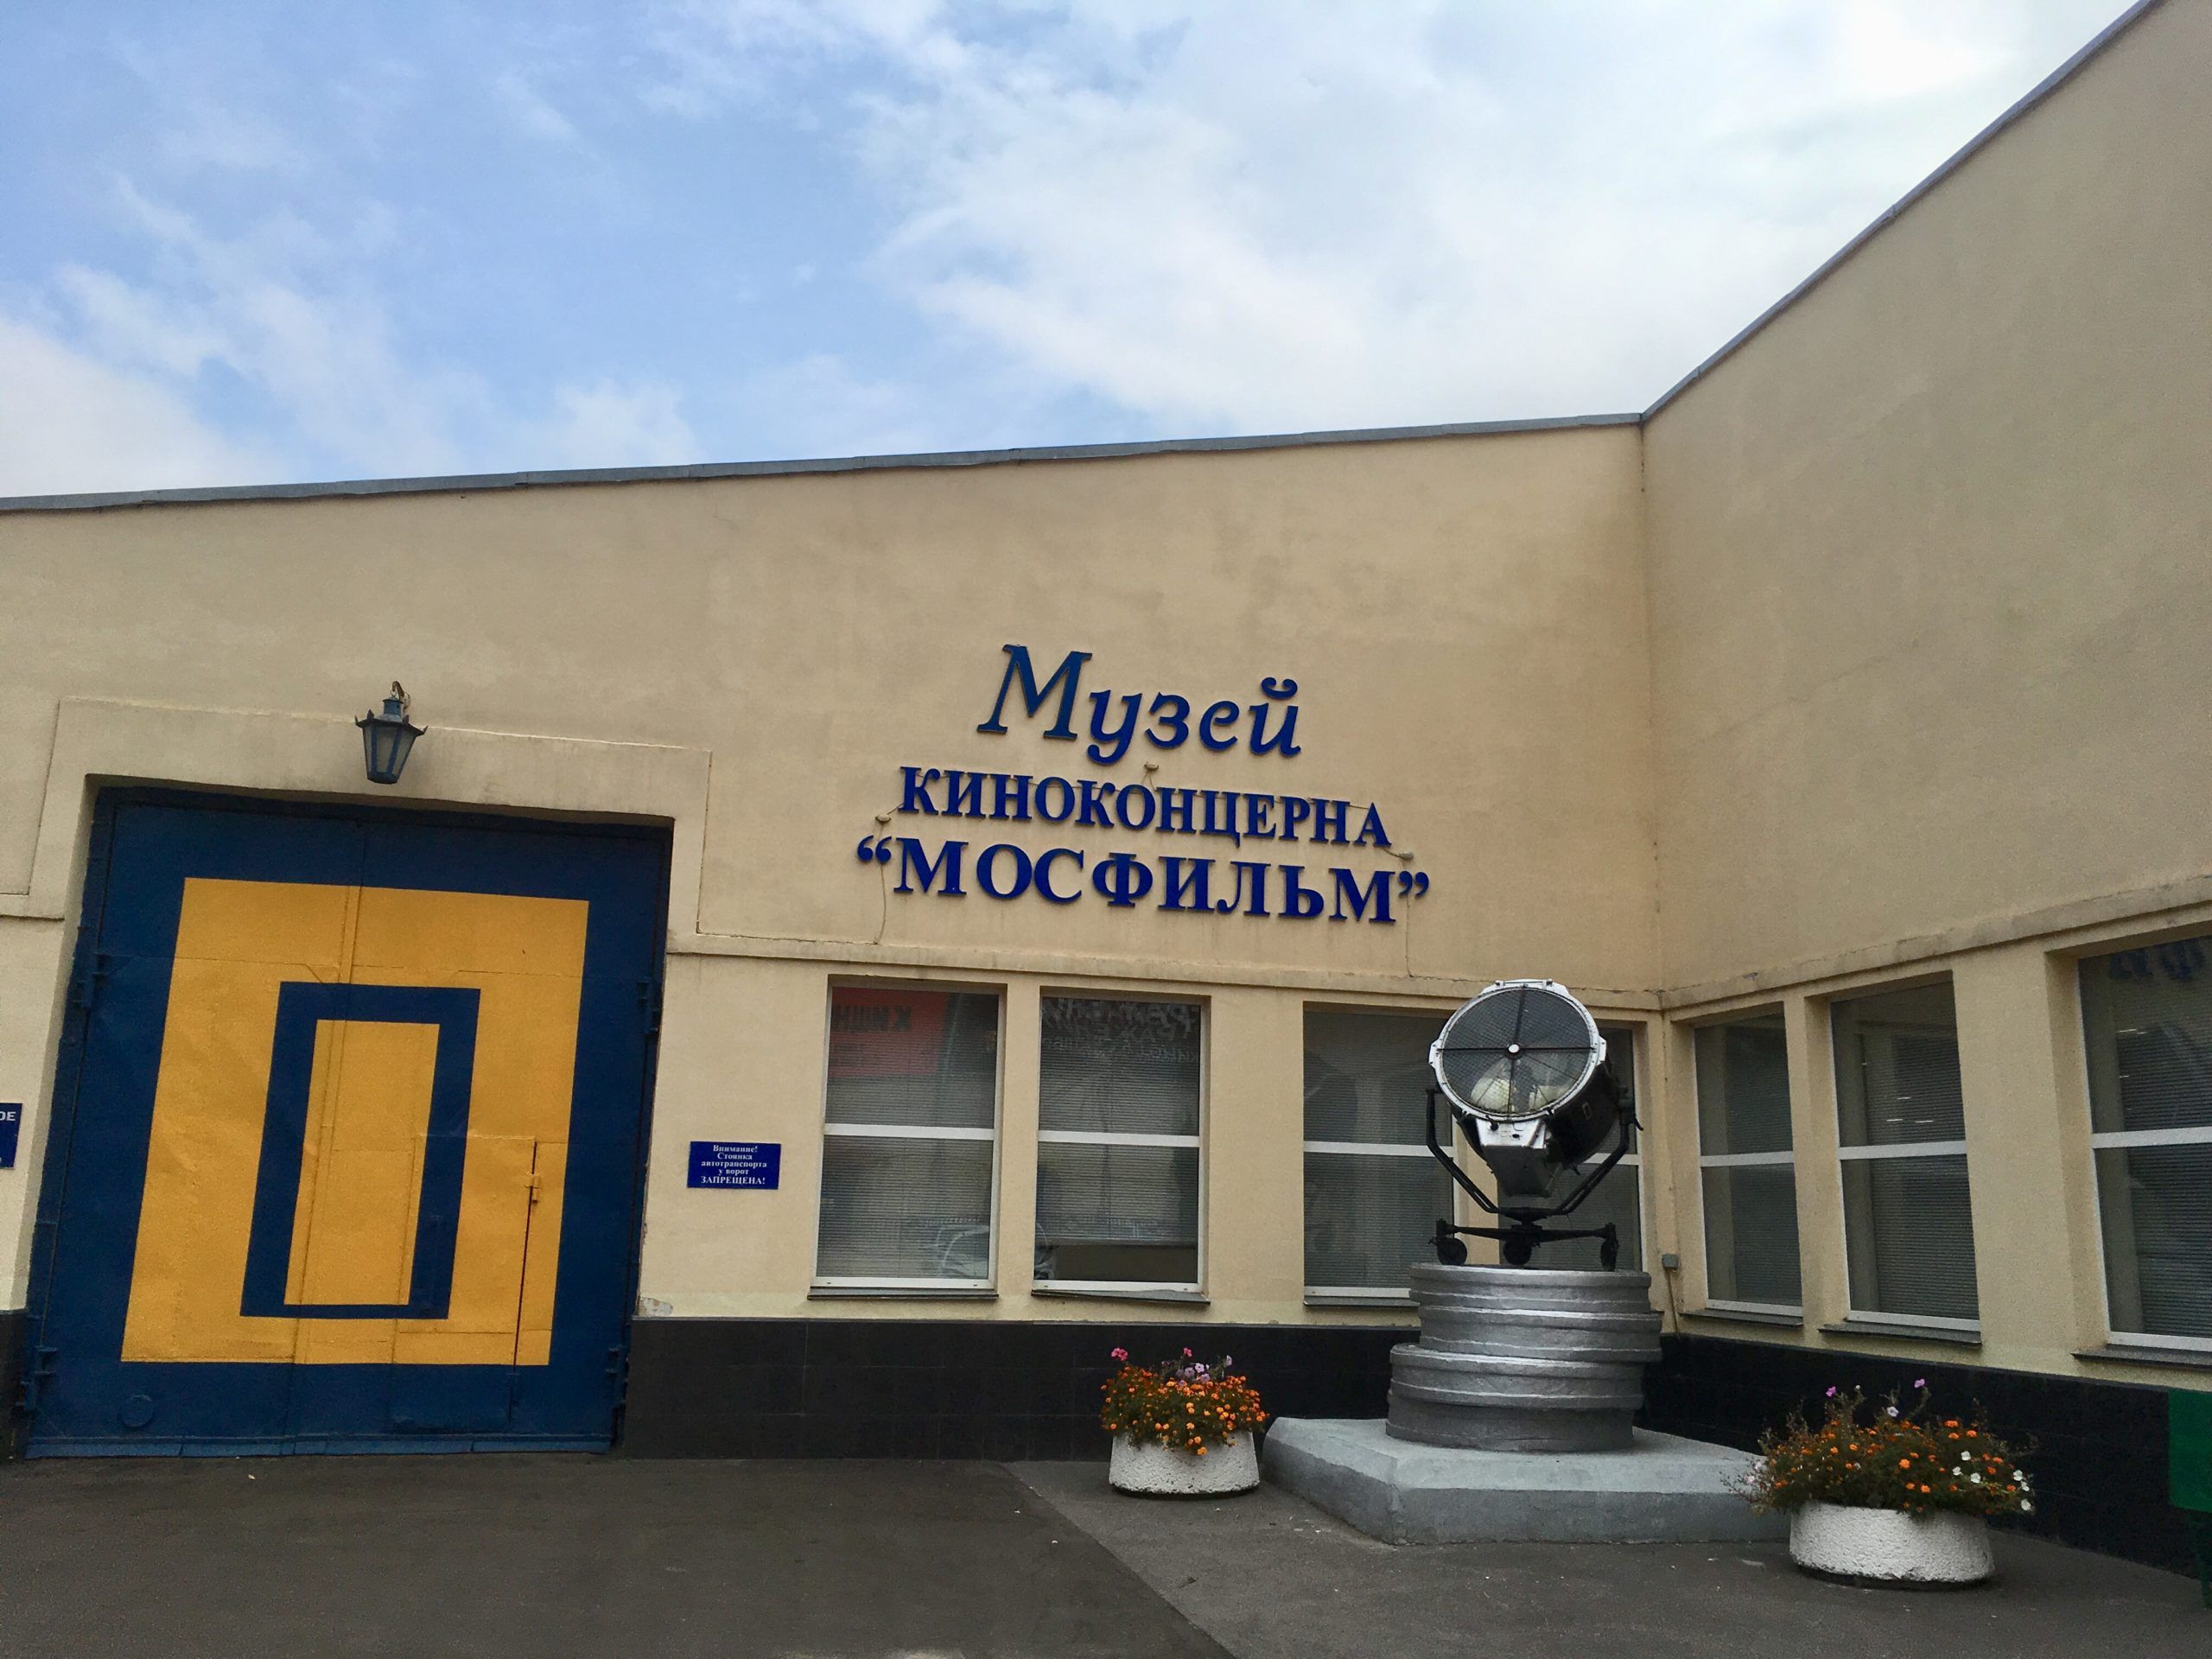 Музей мосфильма